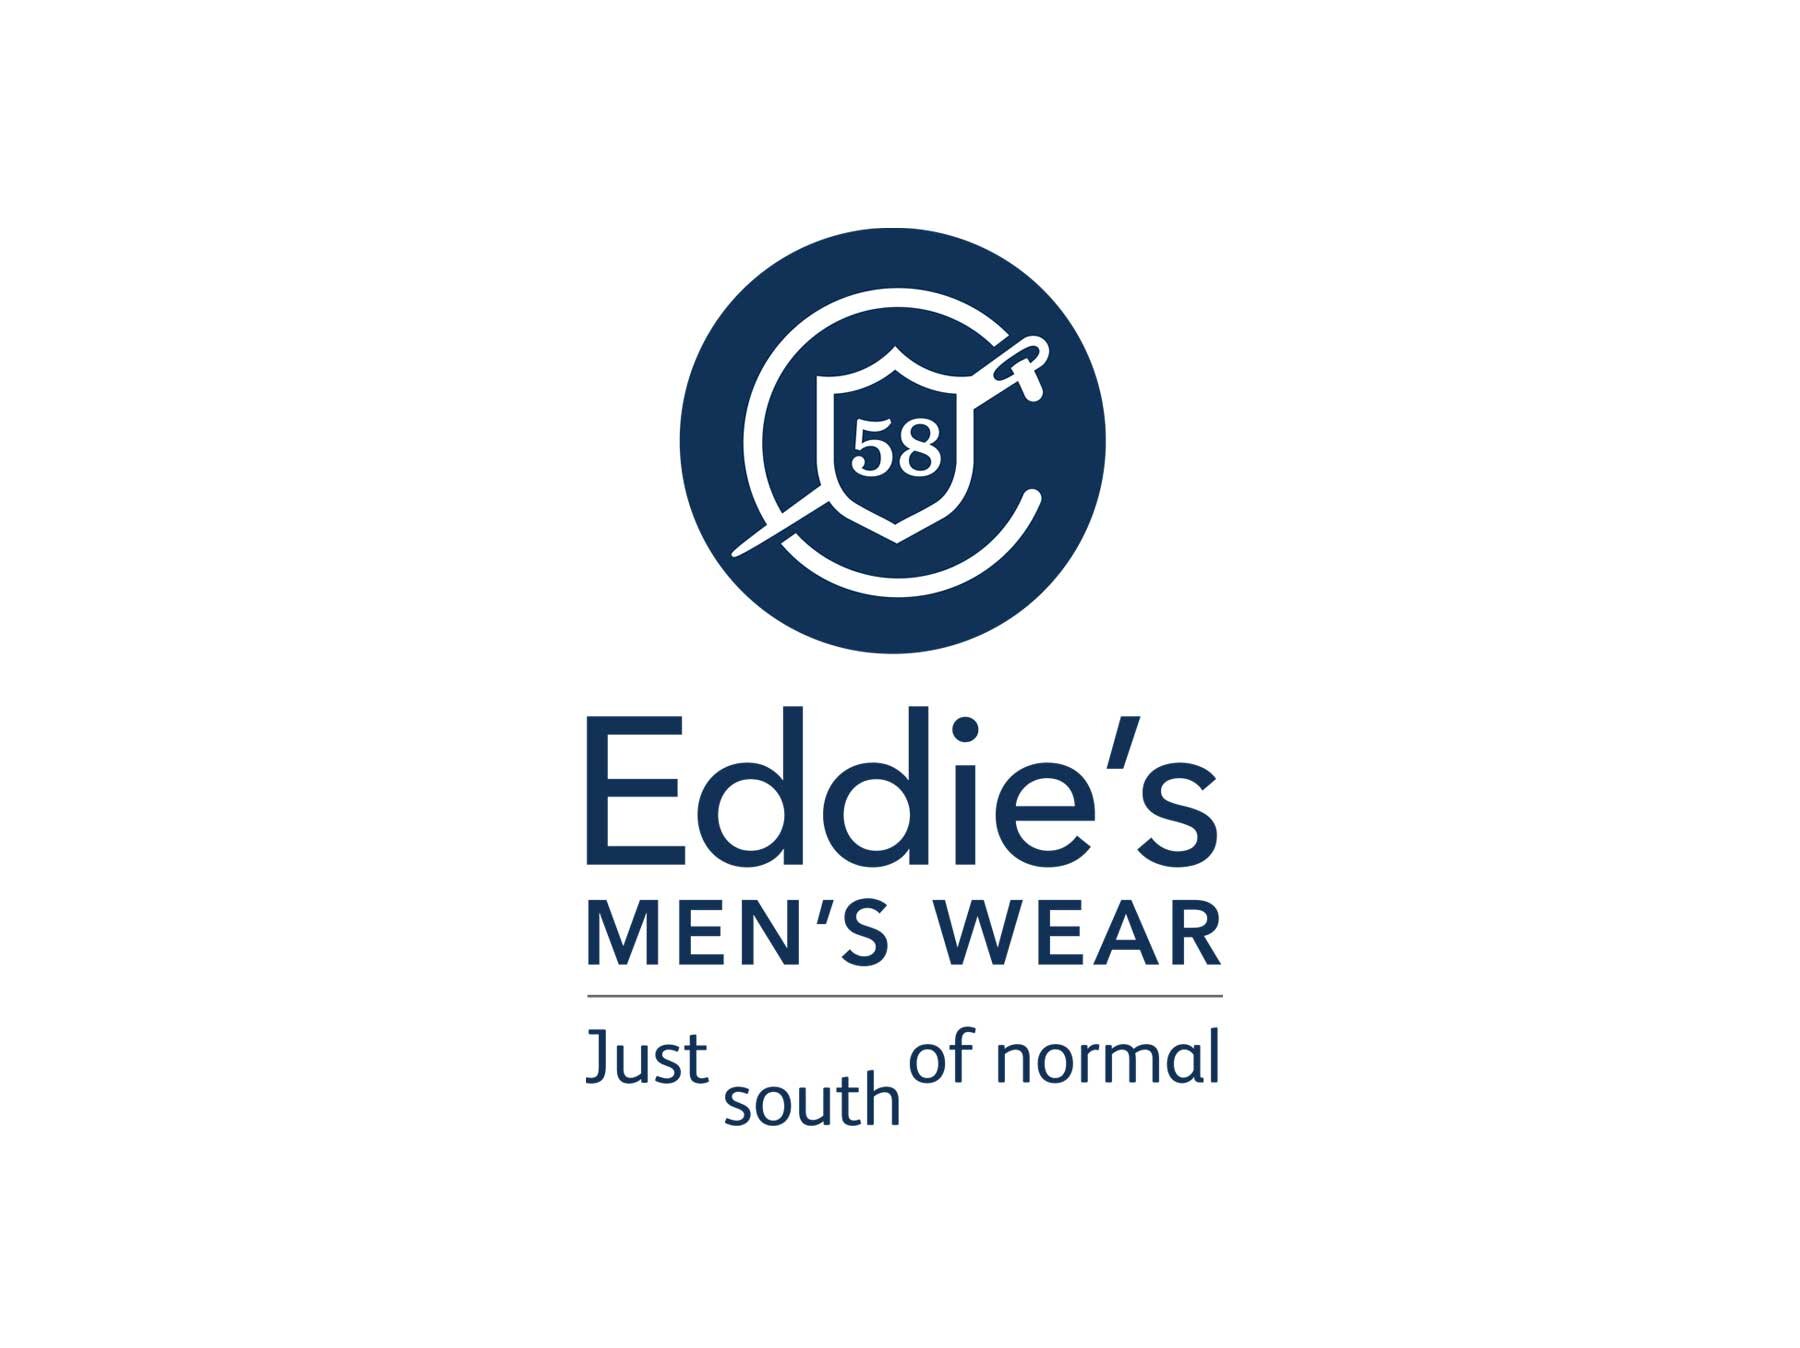 Eddie's Men's Wear logo (Copy)